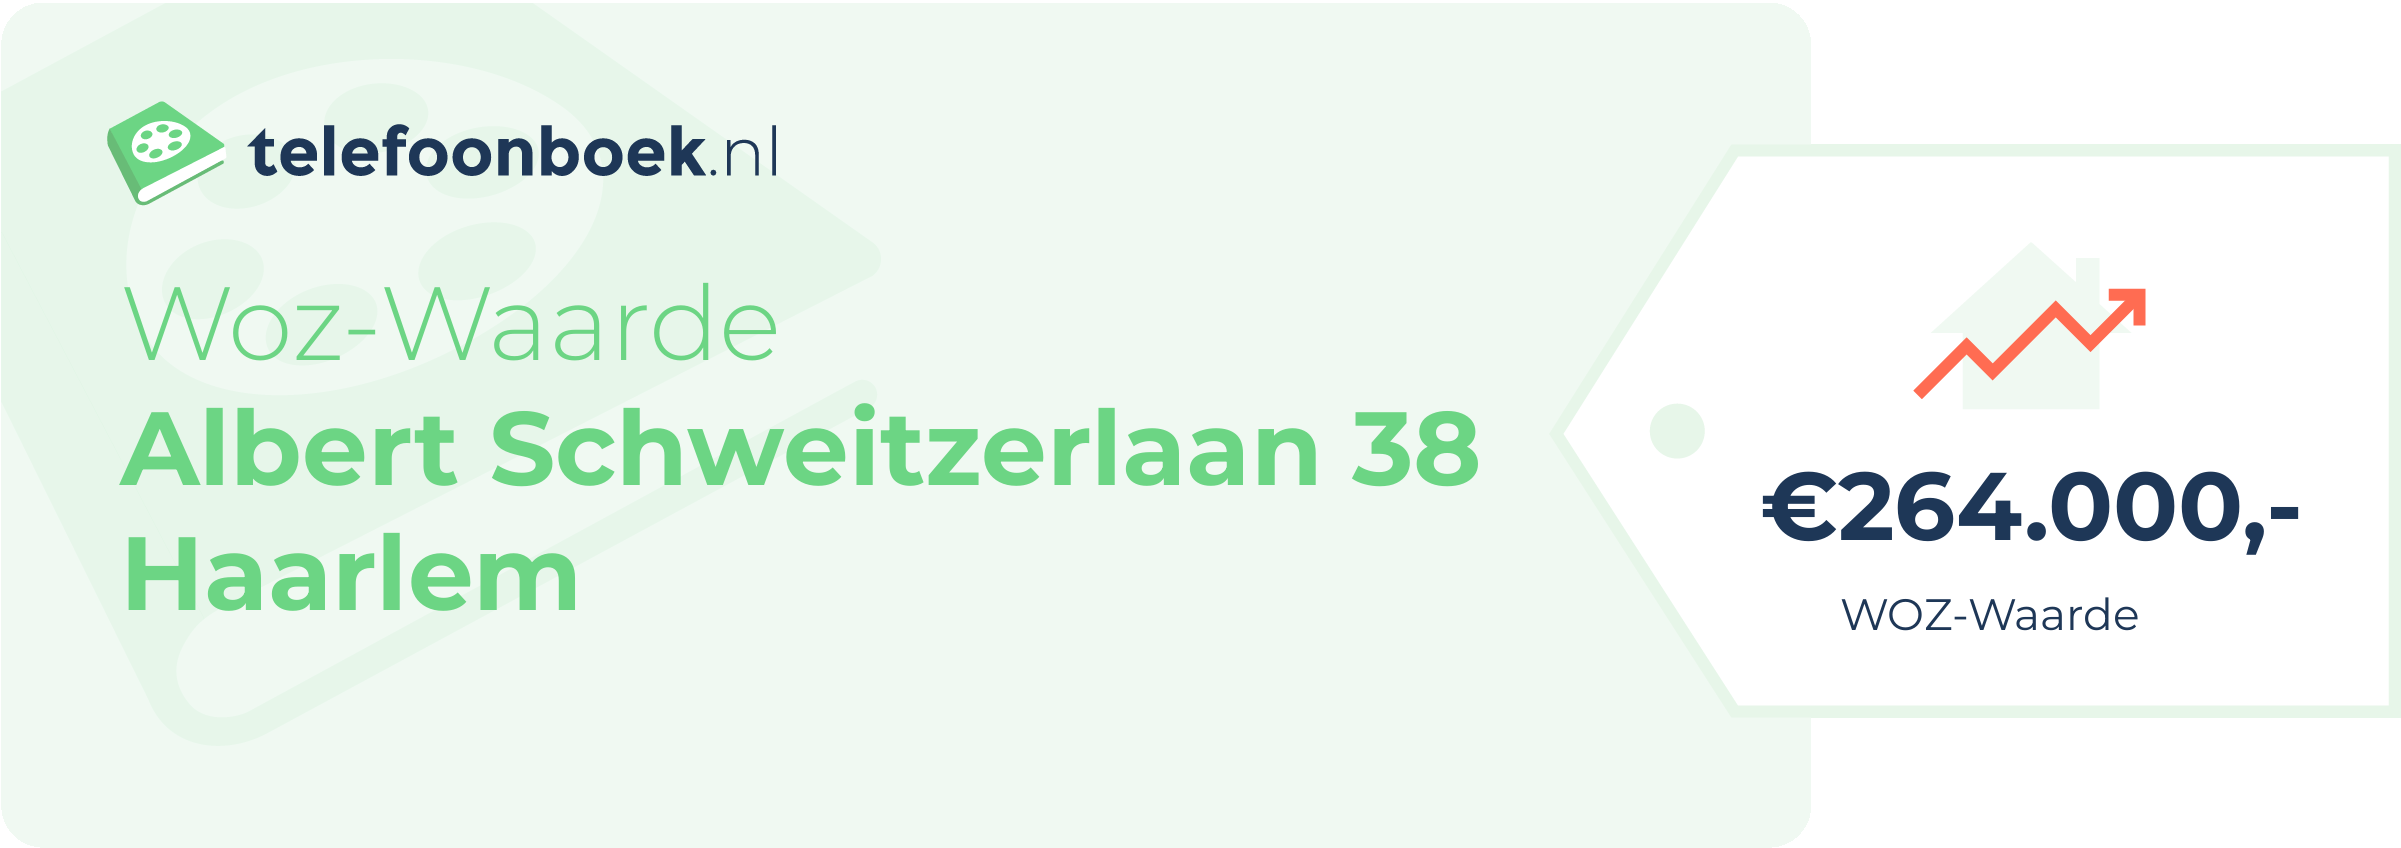 WOZ-waarde Albert Schweitzerlaan 38 Haarlem